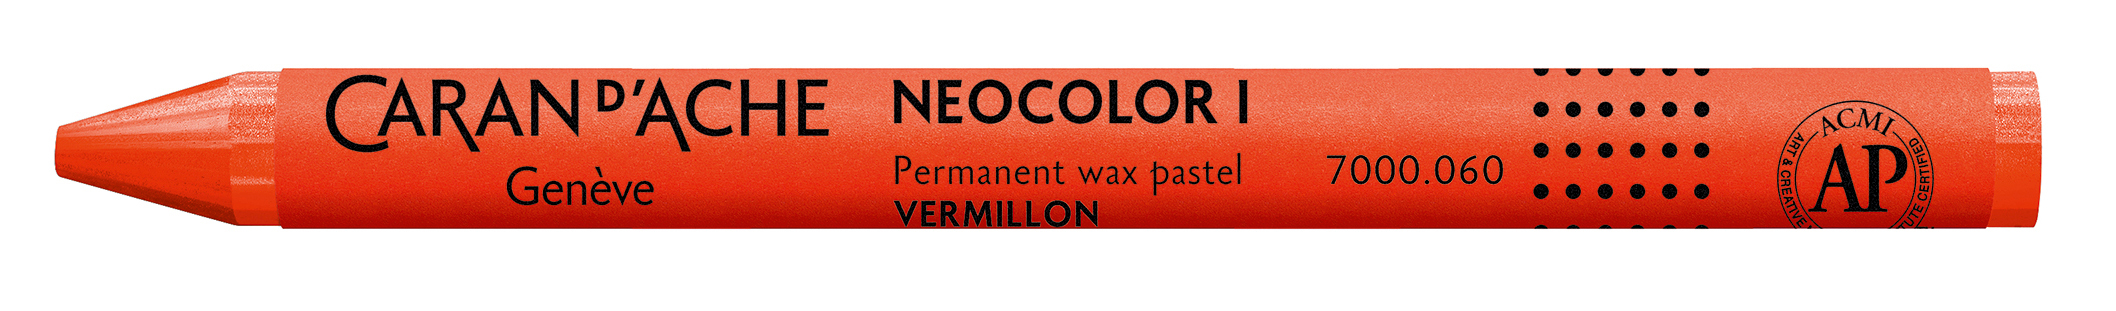 CARAN D'ACHE Crayons de cire Neocolor 1 7000.060 vermillon